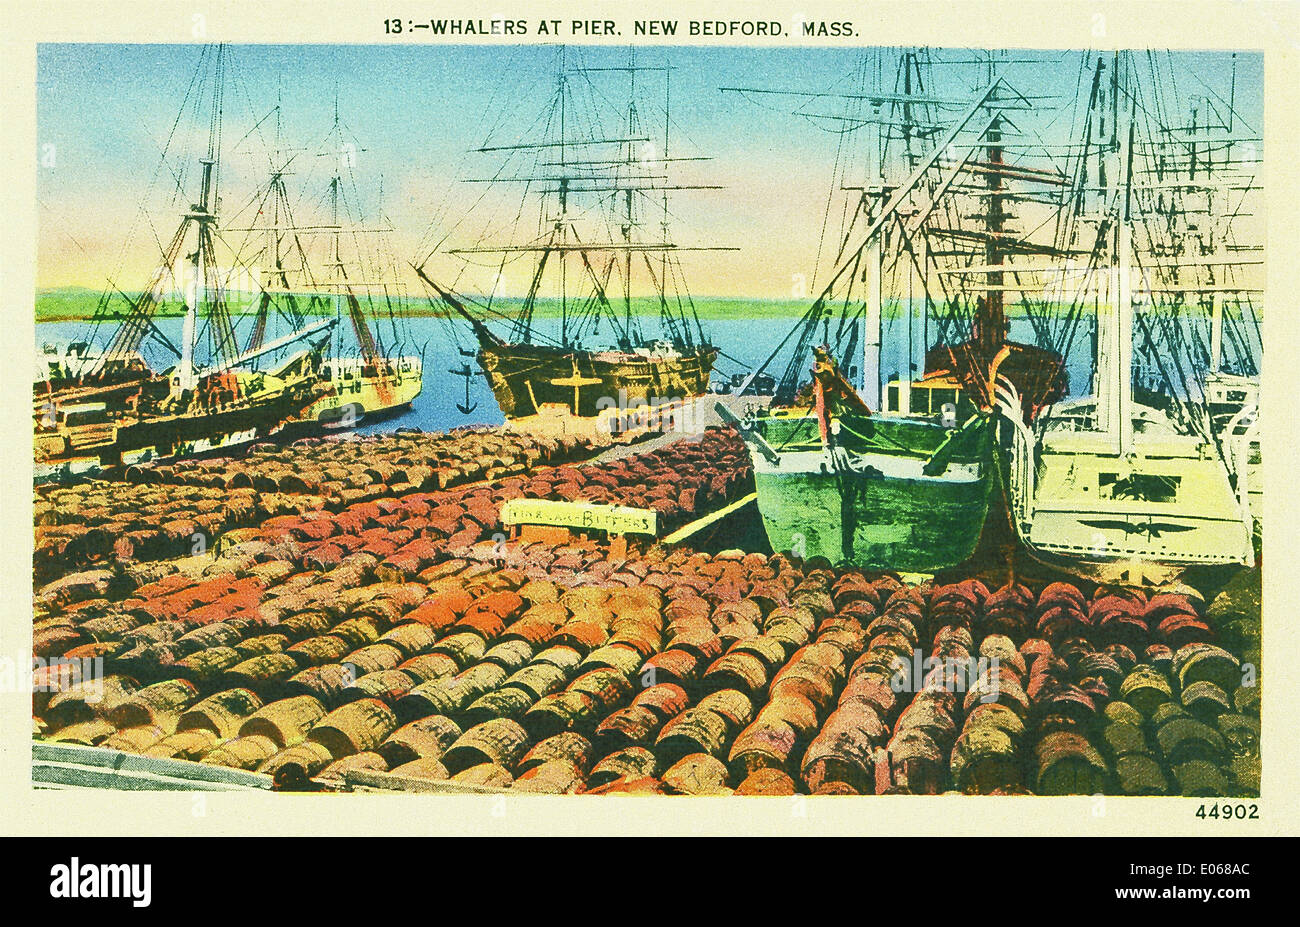 In den 1800er Jahren wurde New-Bedford, dessen Pier hier gezeigt wird, bekannt als der Walfang-Hauptstadt der Welt. Stockfoto